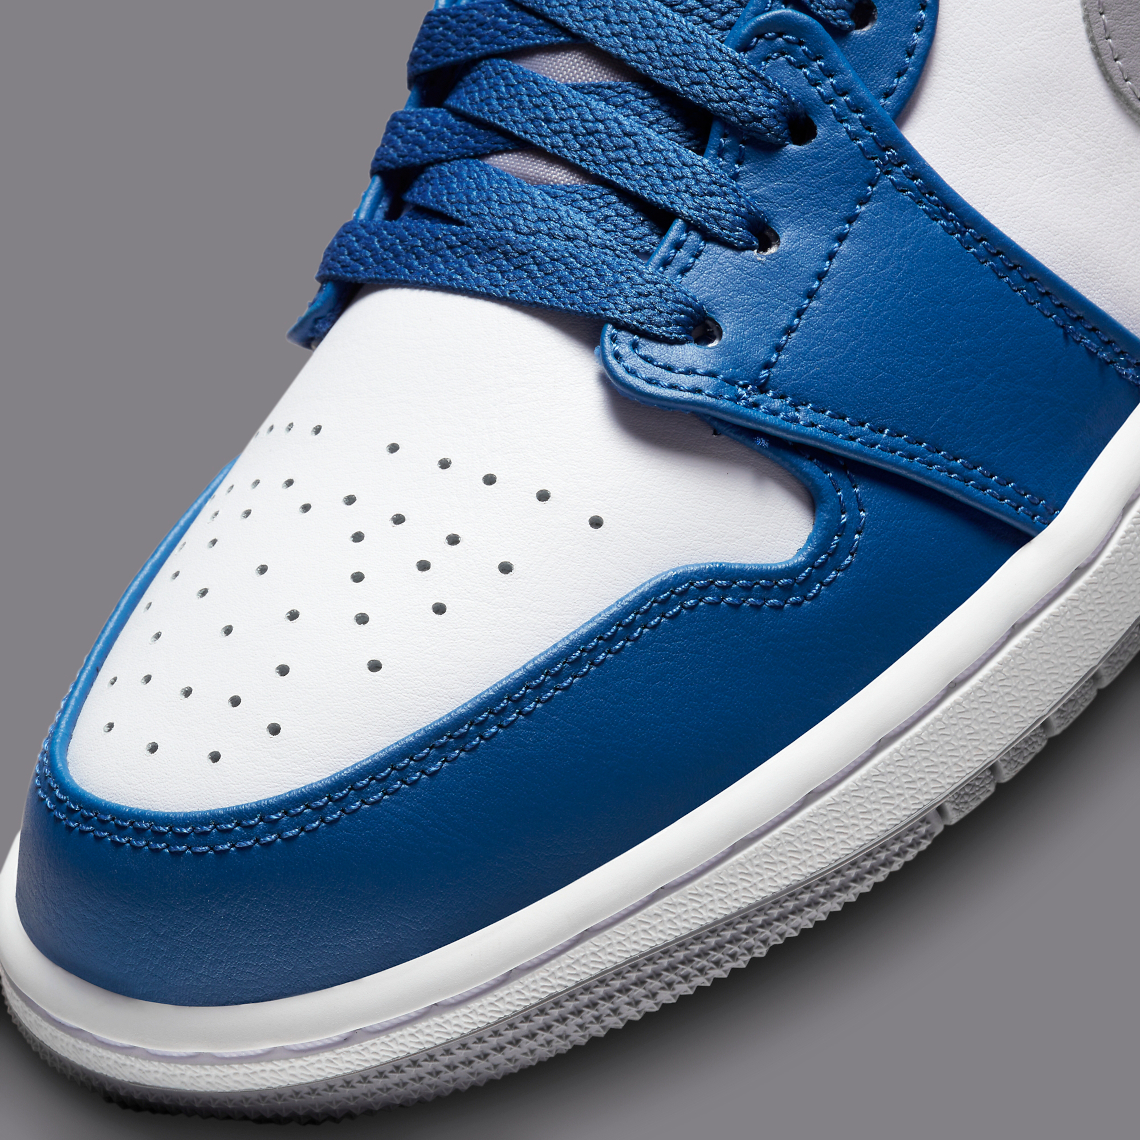 Air Jordan 1 Low “True Blue” 553558-412 | SneakerNews.com